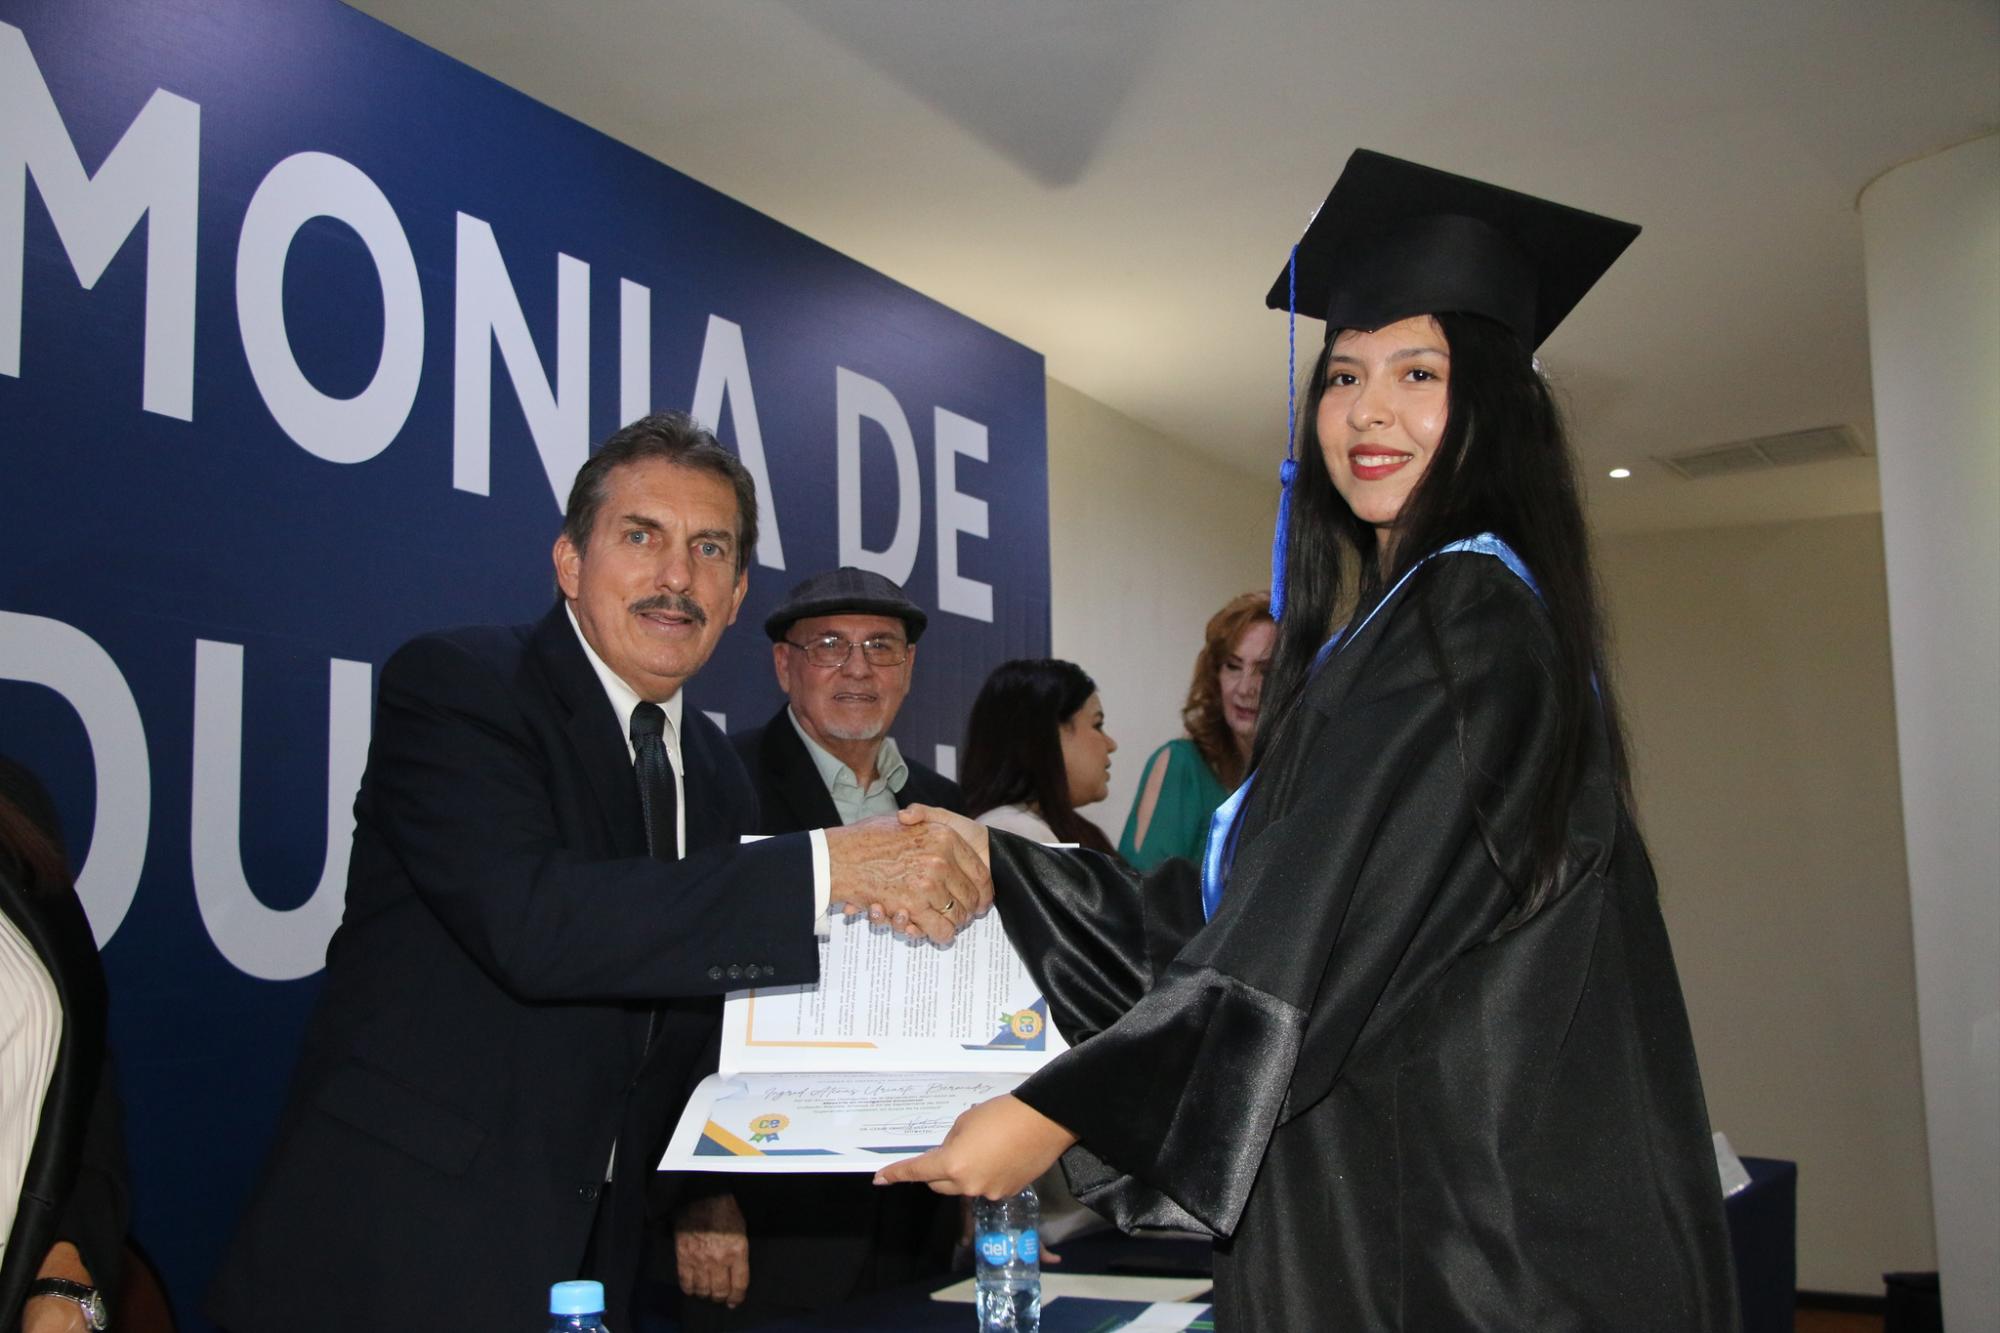 $!Ingrid Atenas Uriarte Bermúdez recibiendo su diploma de egresada de la maestría en inteligencia emocional.